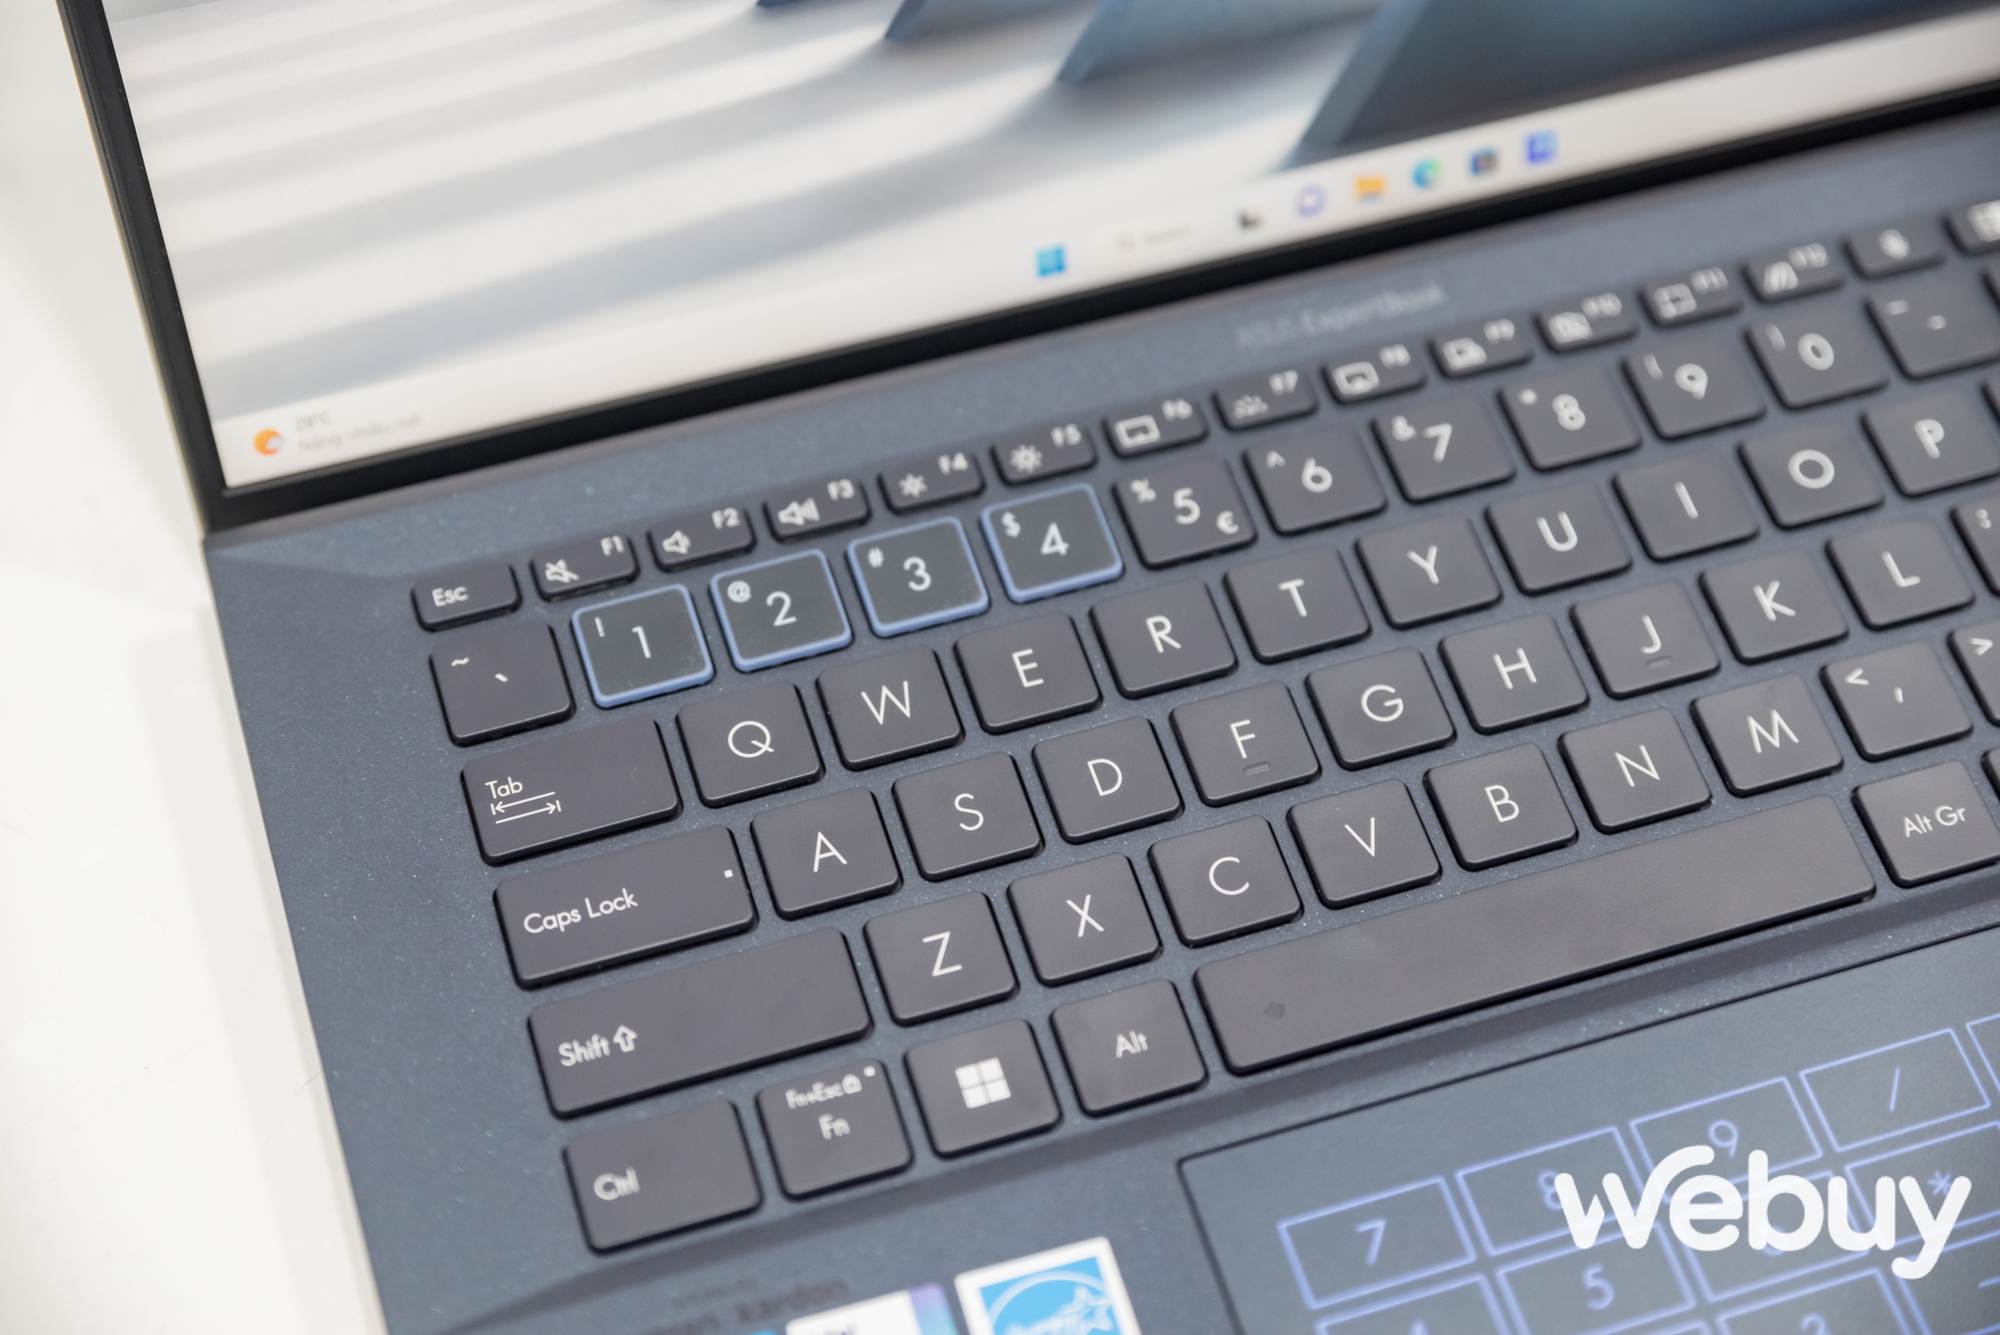 ASUS giới thiệu loạt laptop ExpertBook thế hệ mới, đa dạng lựa chọn hướng đến đối tượng khách hàng doanh nghiệp - Ảnh 16.